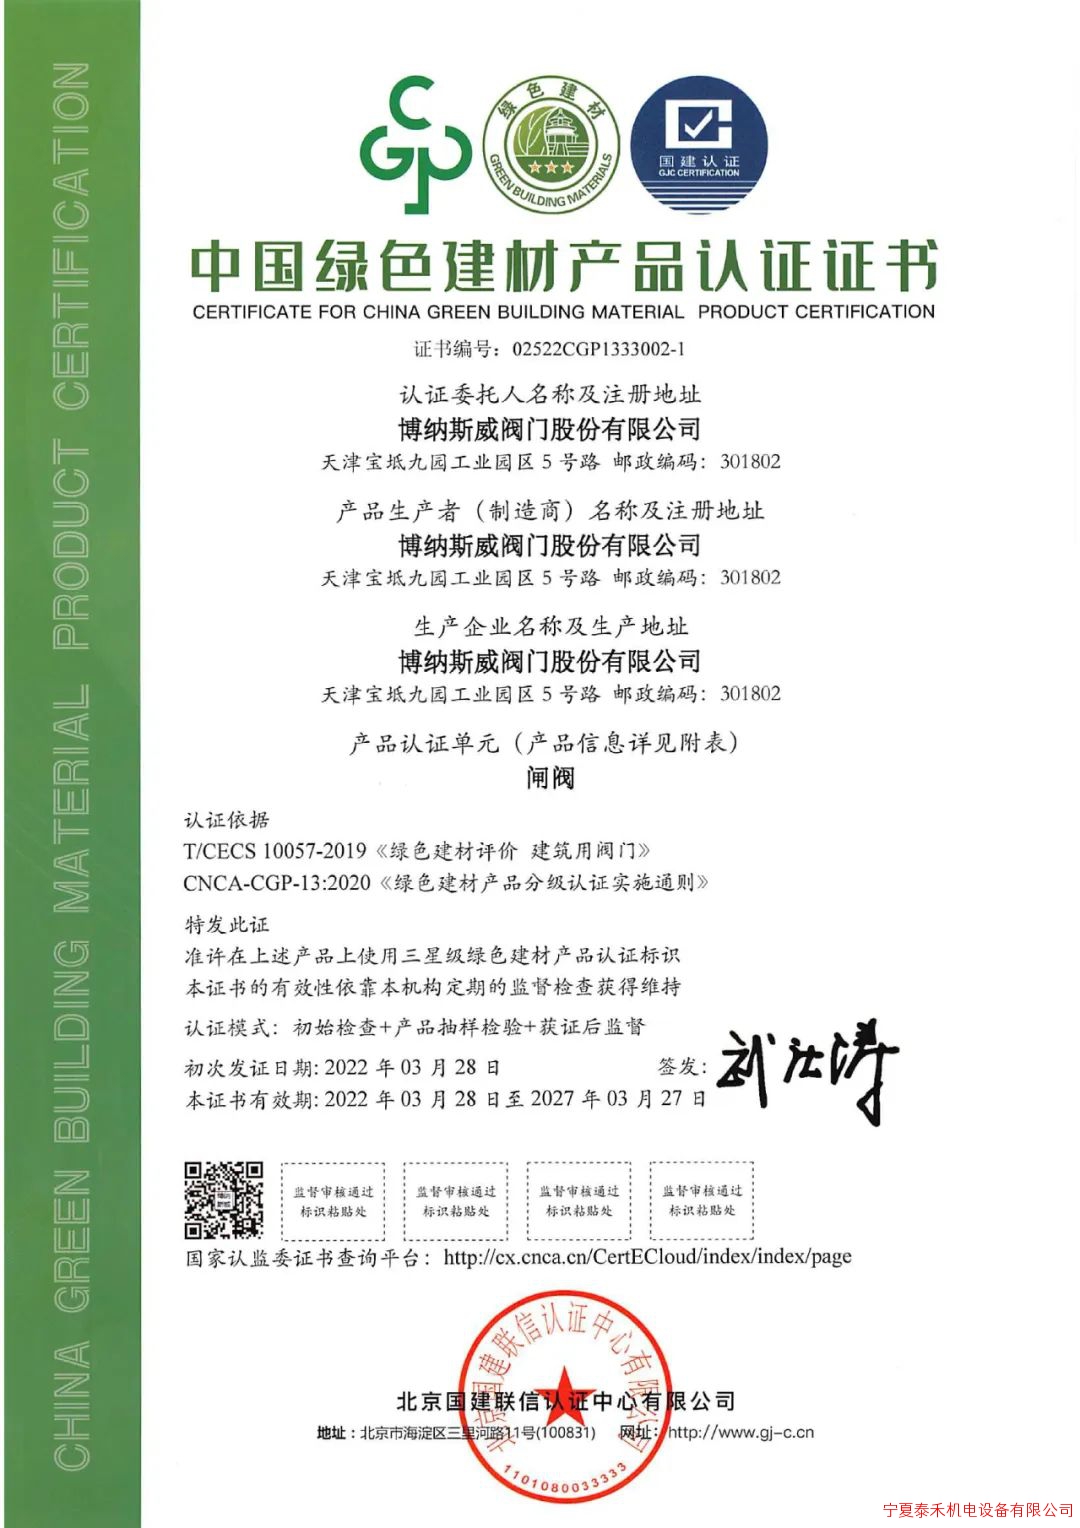 博纳斯威获得“中国绿色建材产品认证证书”